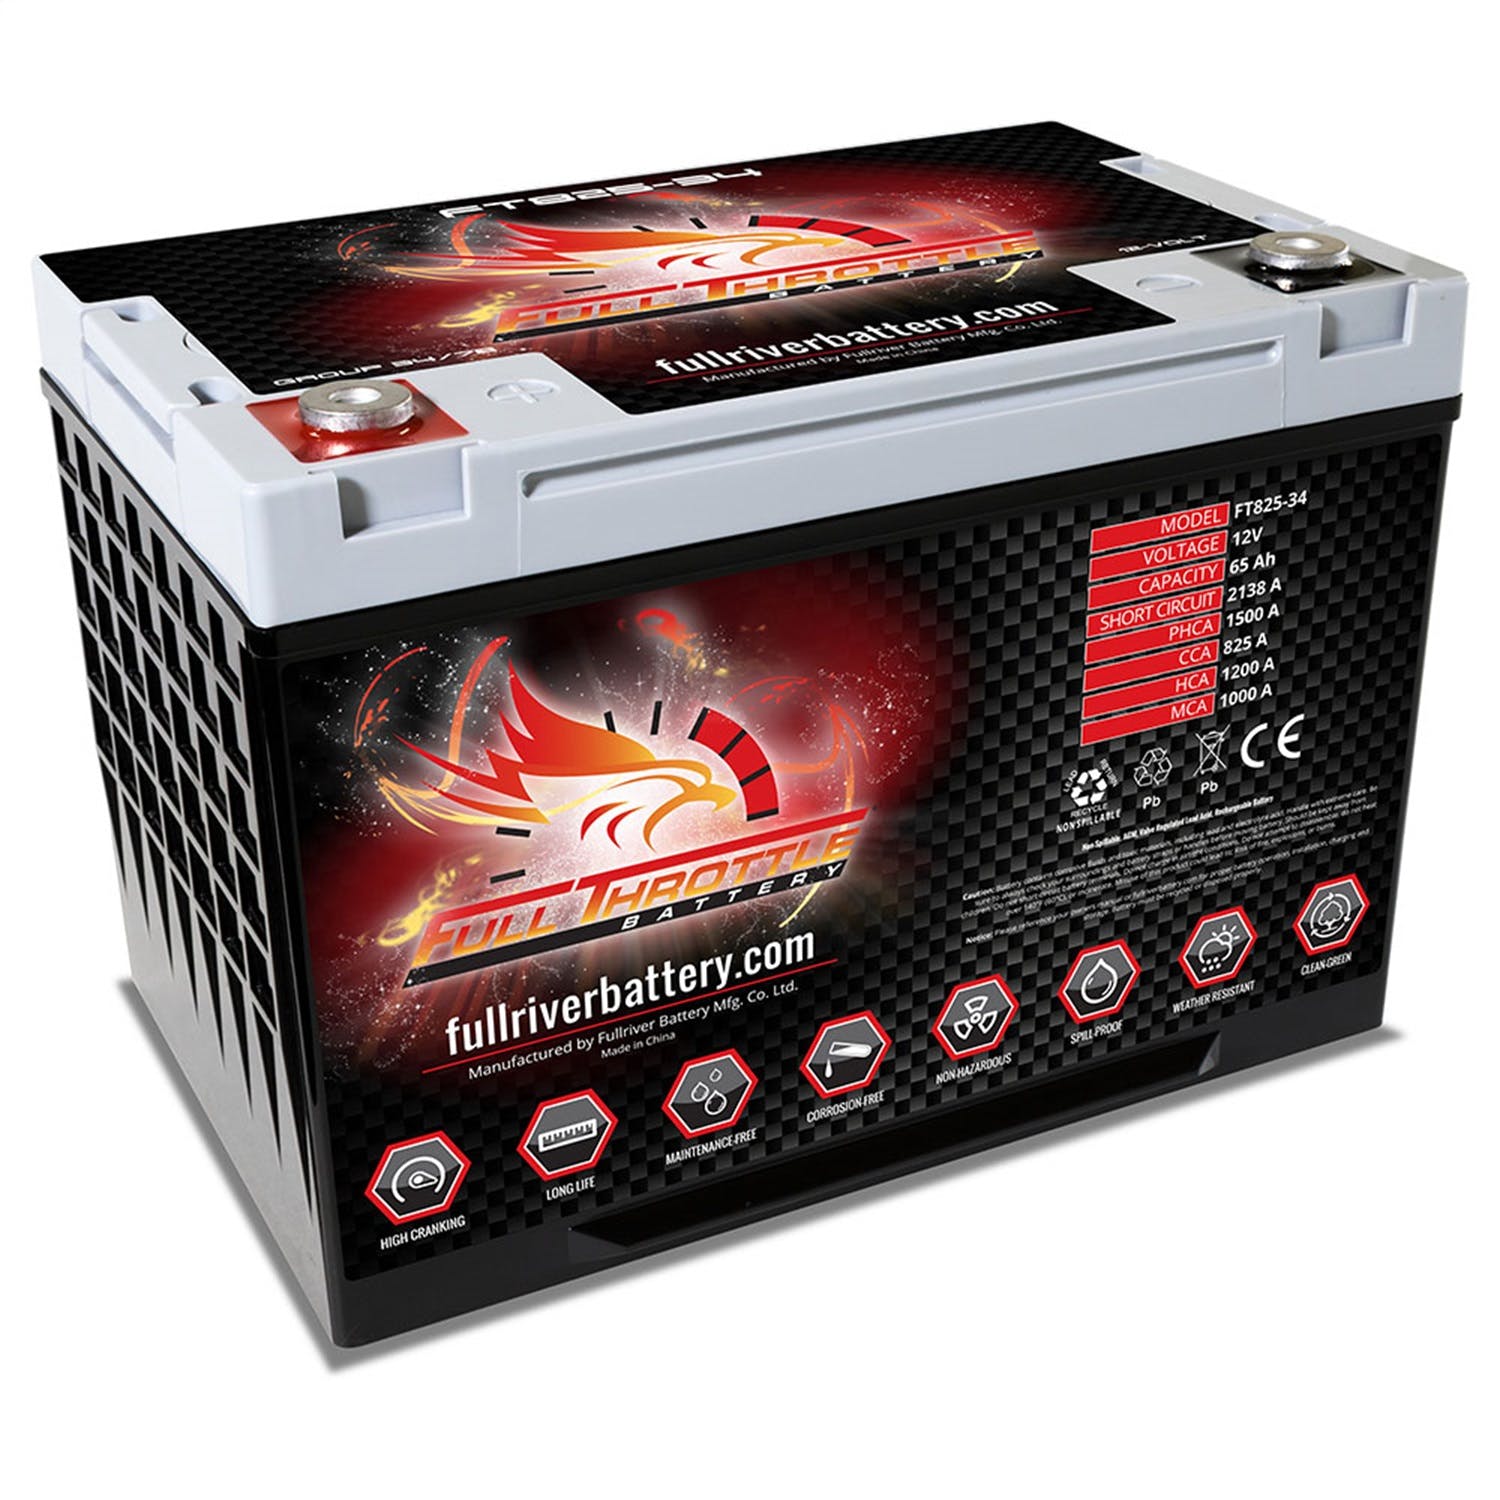 Fullriver Battery FT825-34 Full Throttle 12V Automotive Battery